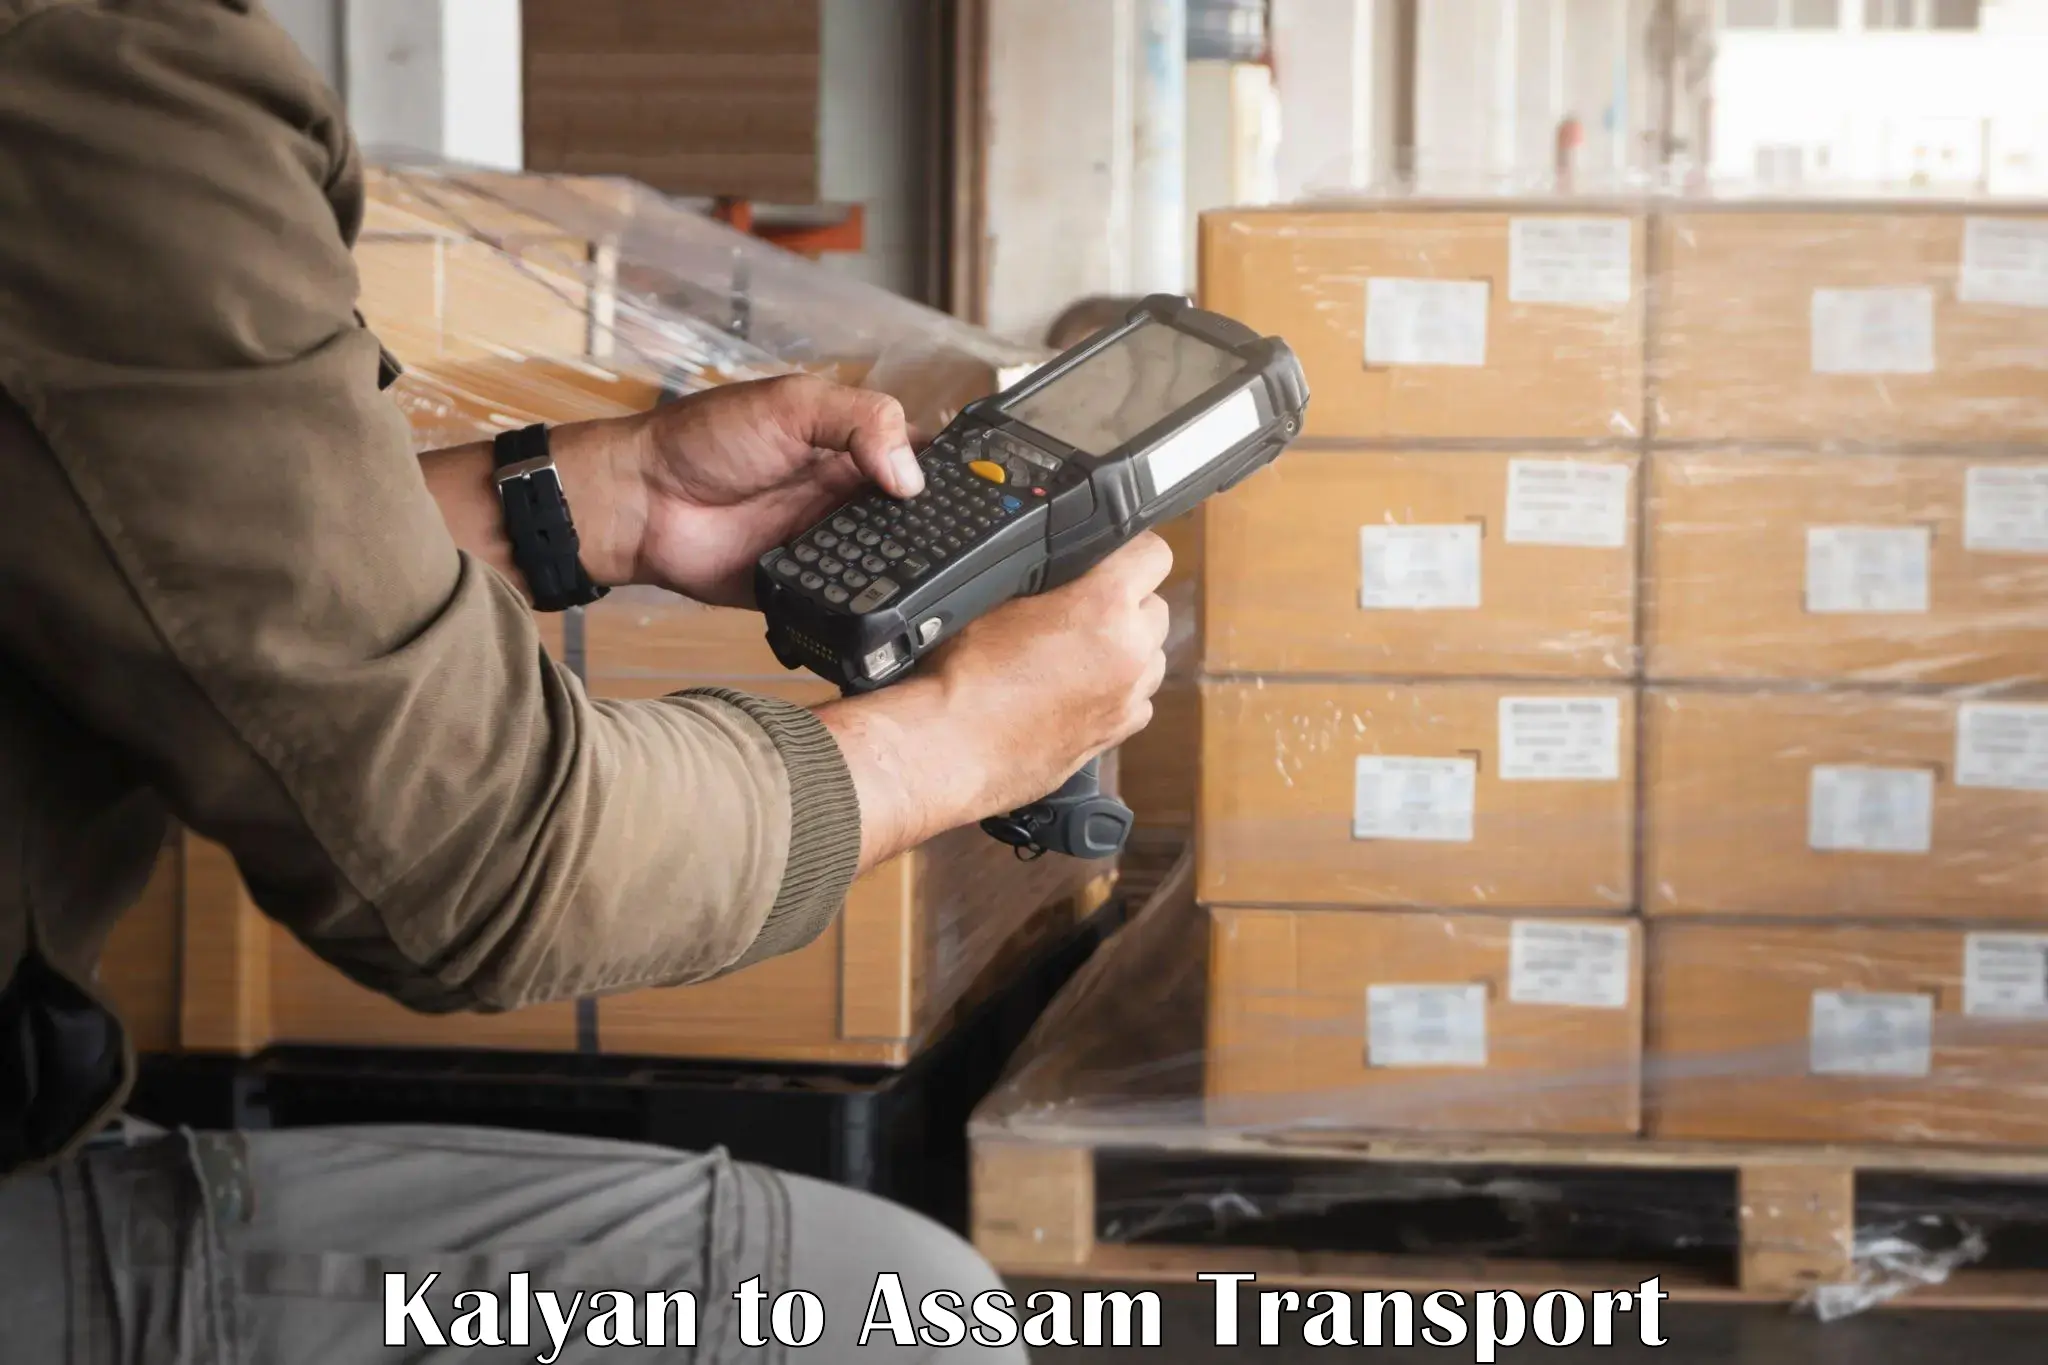 Sending bike to another city Kalyan to Assam